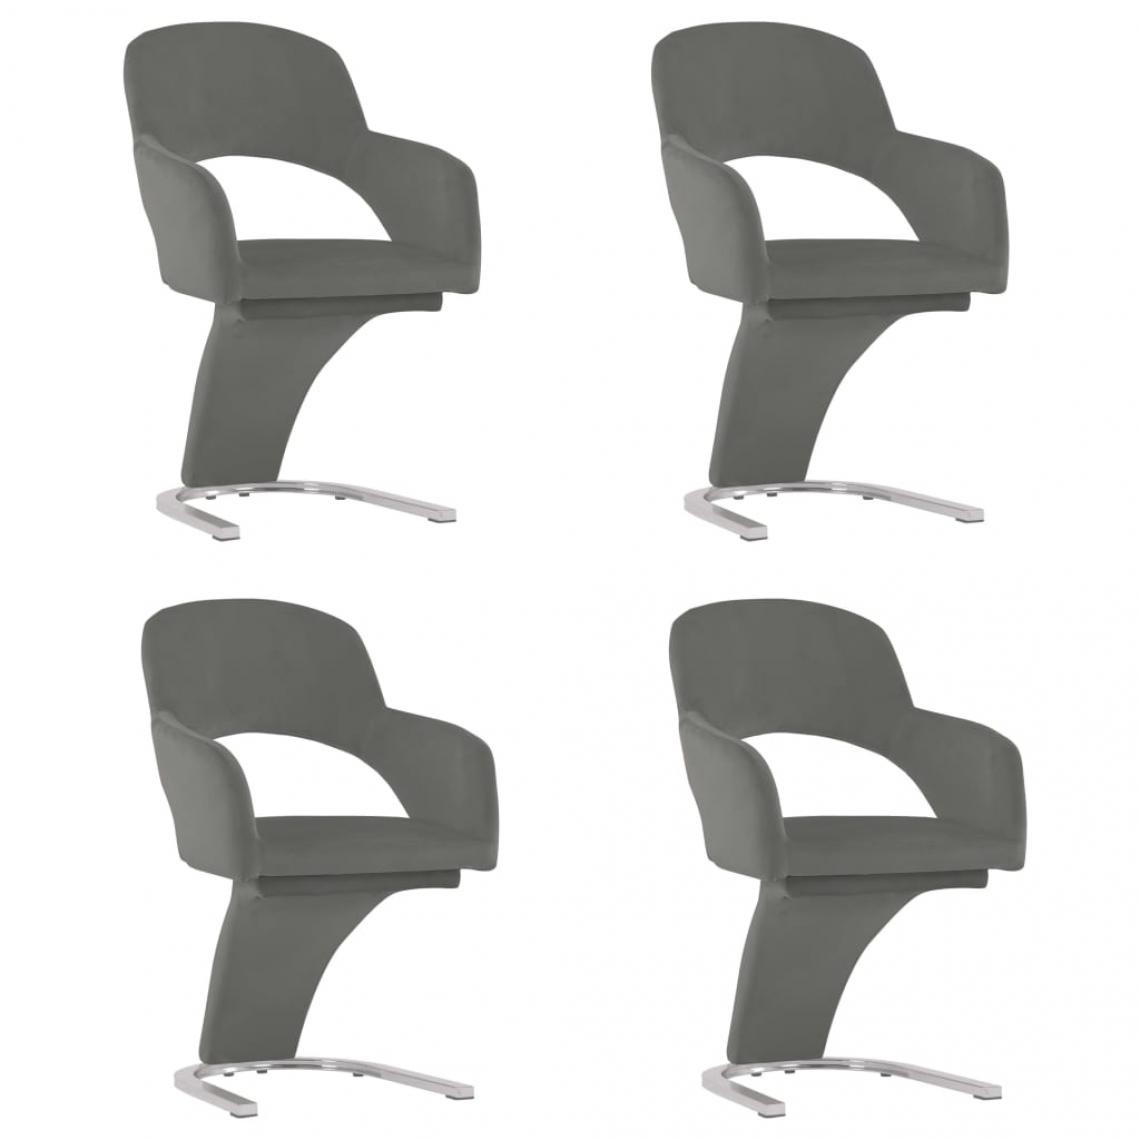 Decoshop26 - Lot de 4 chaises de salle à manger cuisine design moderne velours gris CDS021620 - Chaises